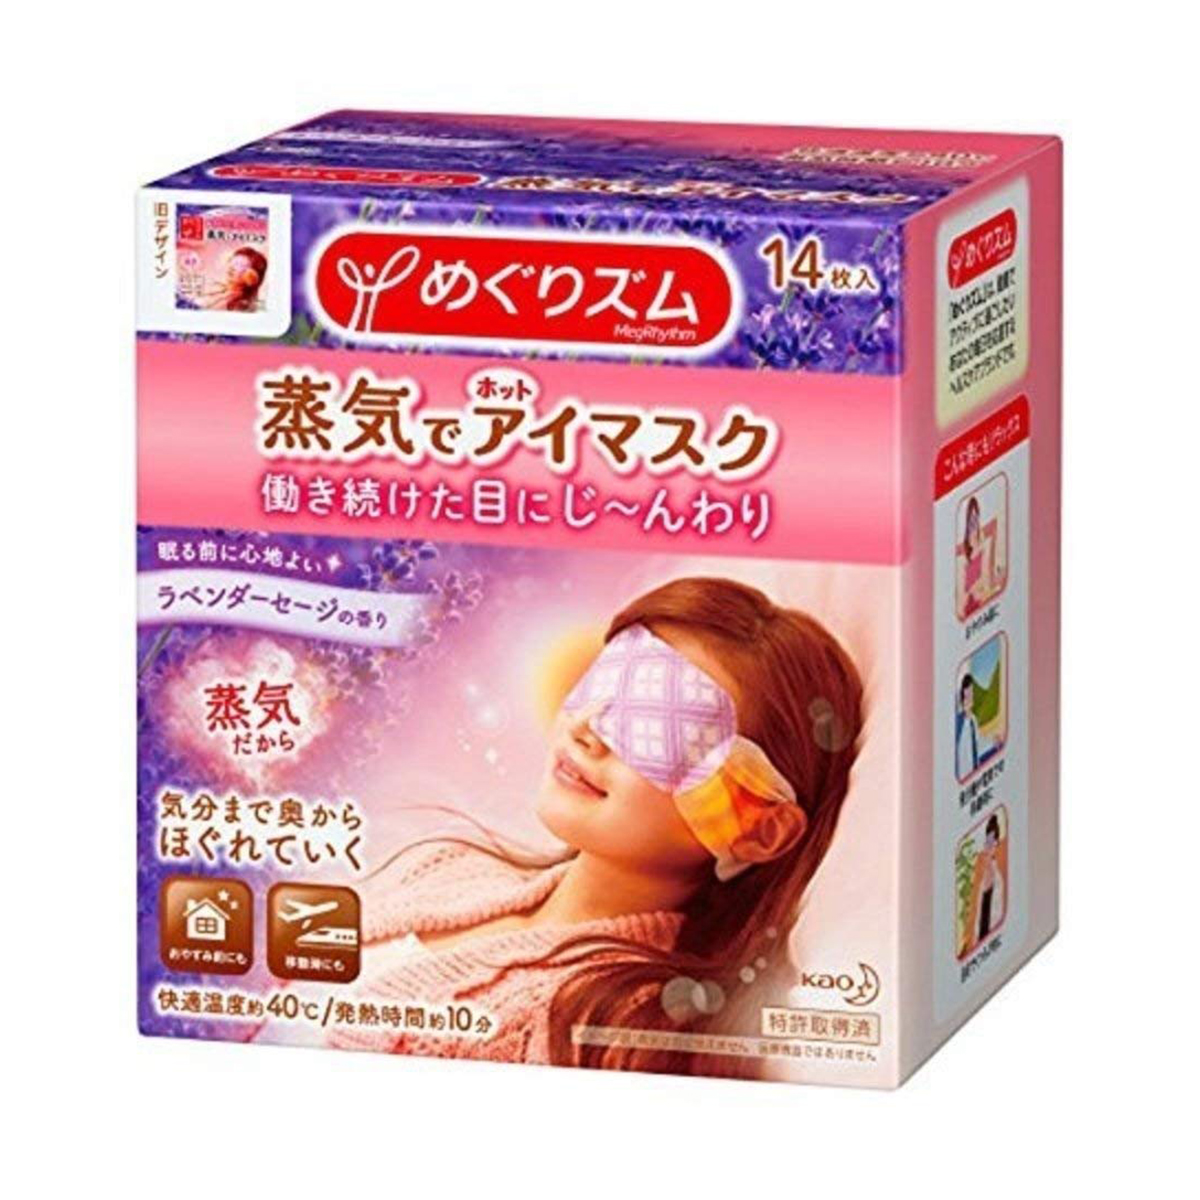  Masque pour les yeux chaud à la vapeur de Soins de santé Kao MEGURISM 